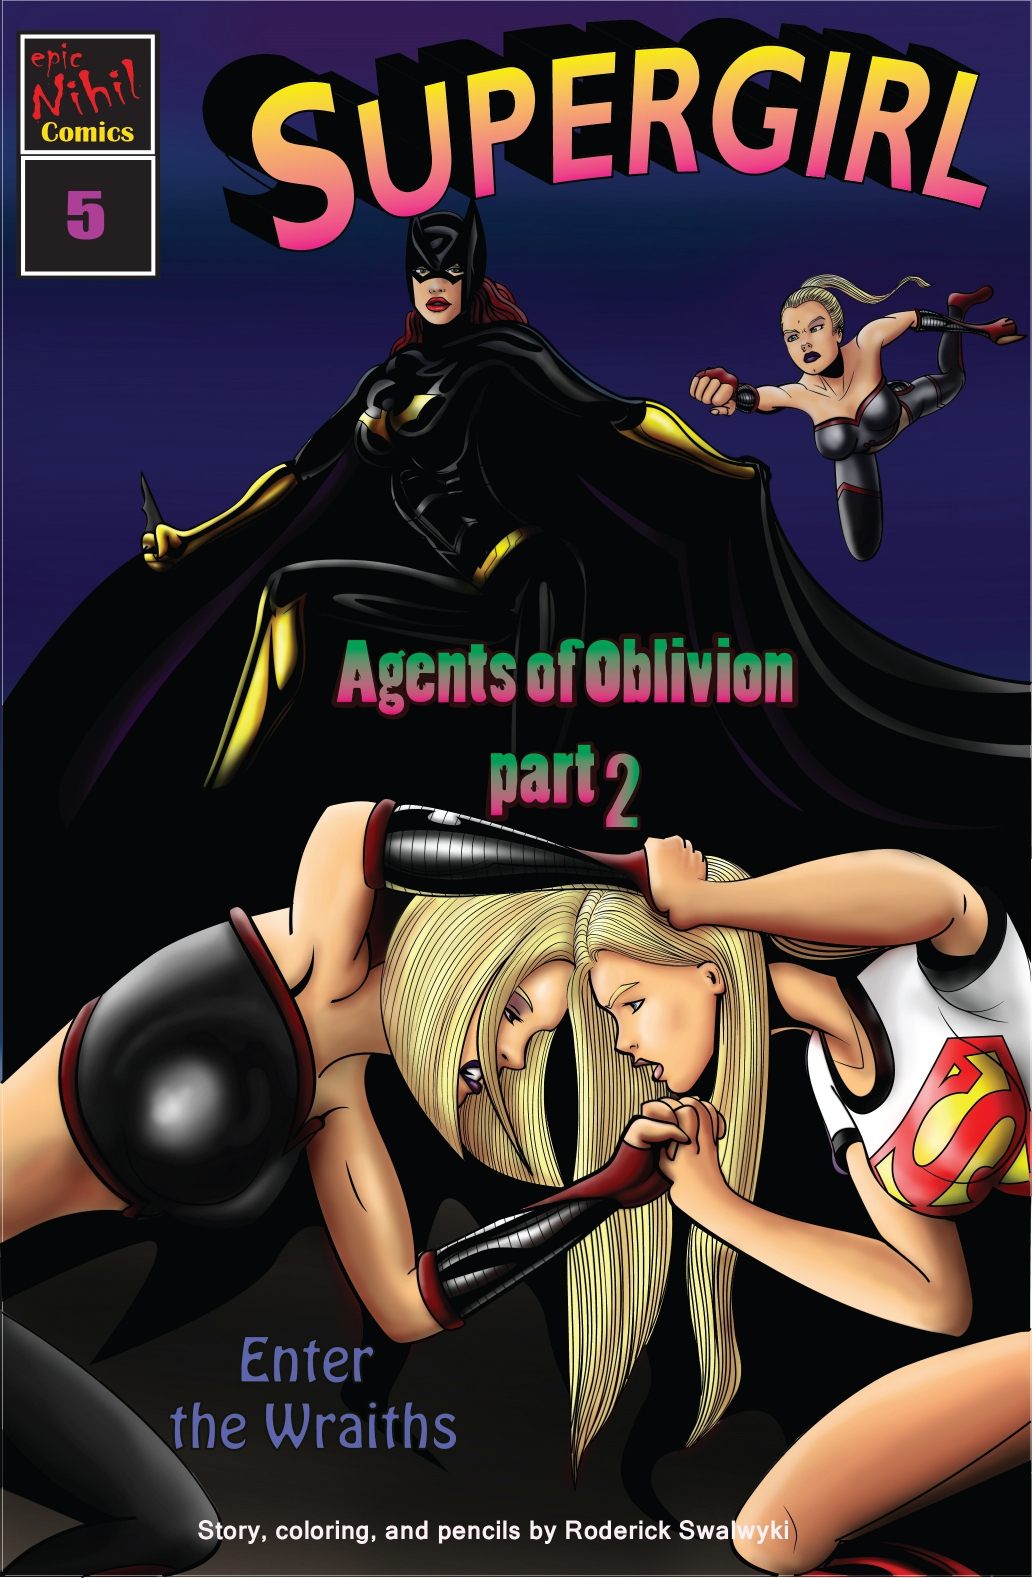 Supergirl: Issue 5 – Demonic Bloodsport Part 2 by Roderick Swawyki